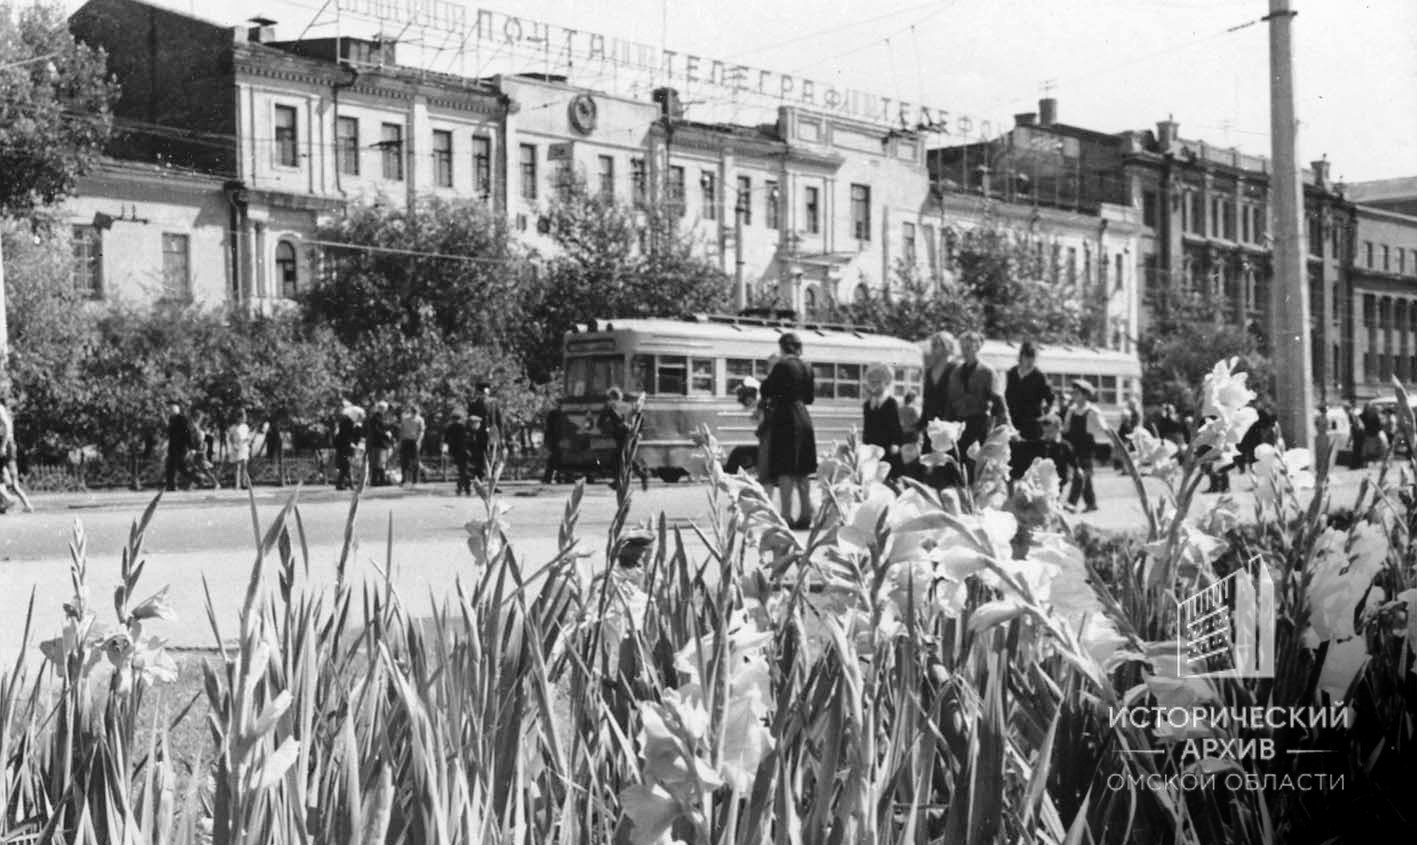 Омск — Закрытые трамвайные линии; Омск — Исторические фотографии; Омск — Трамваи без номеров